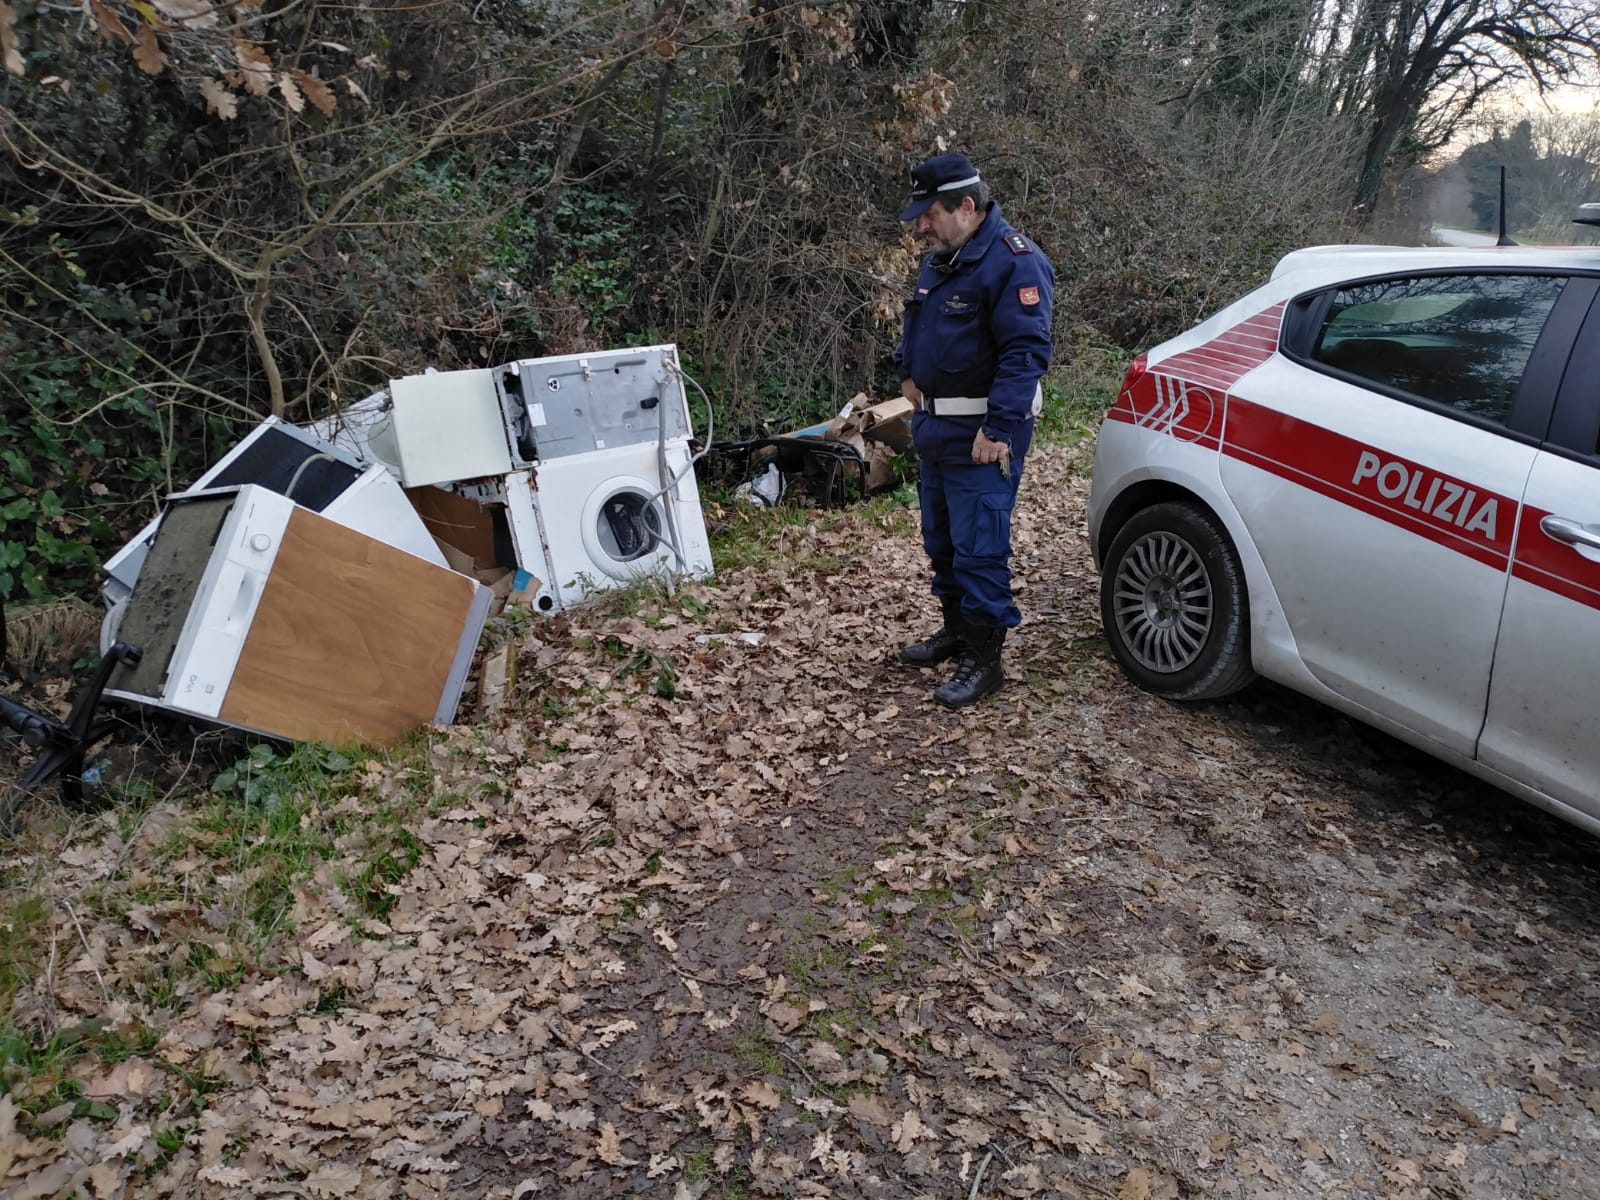 Decine  e decine di rifiuti abbandonati ad Altopascio: i responsabili rischiano fino a due anni di arresto e una multa di 26mila euro